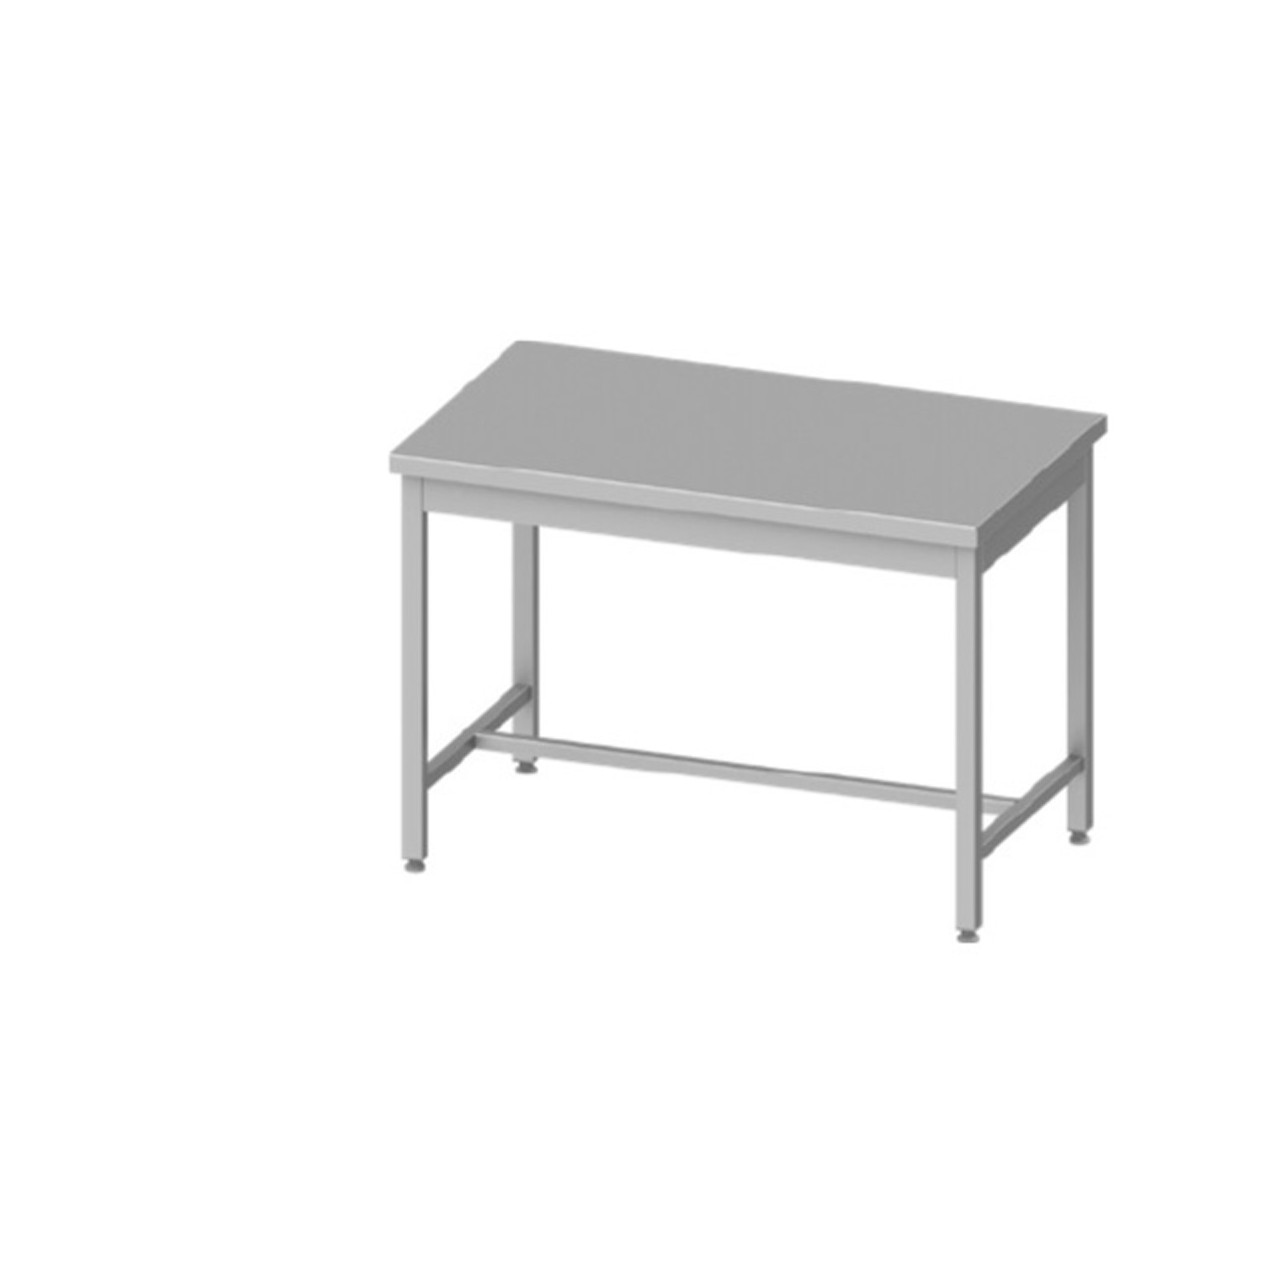 Rozsdamentes asztal alsó polccal RMA4060AP